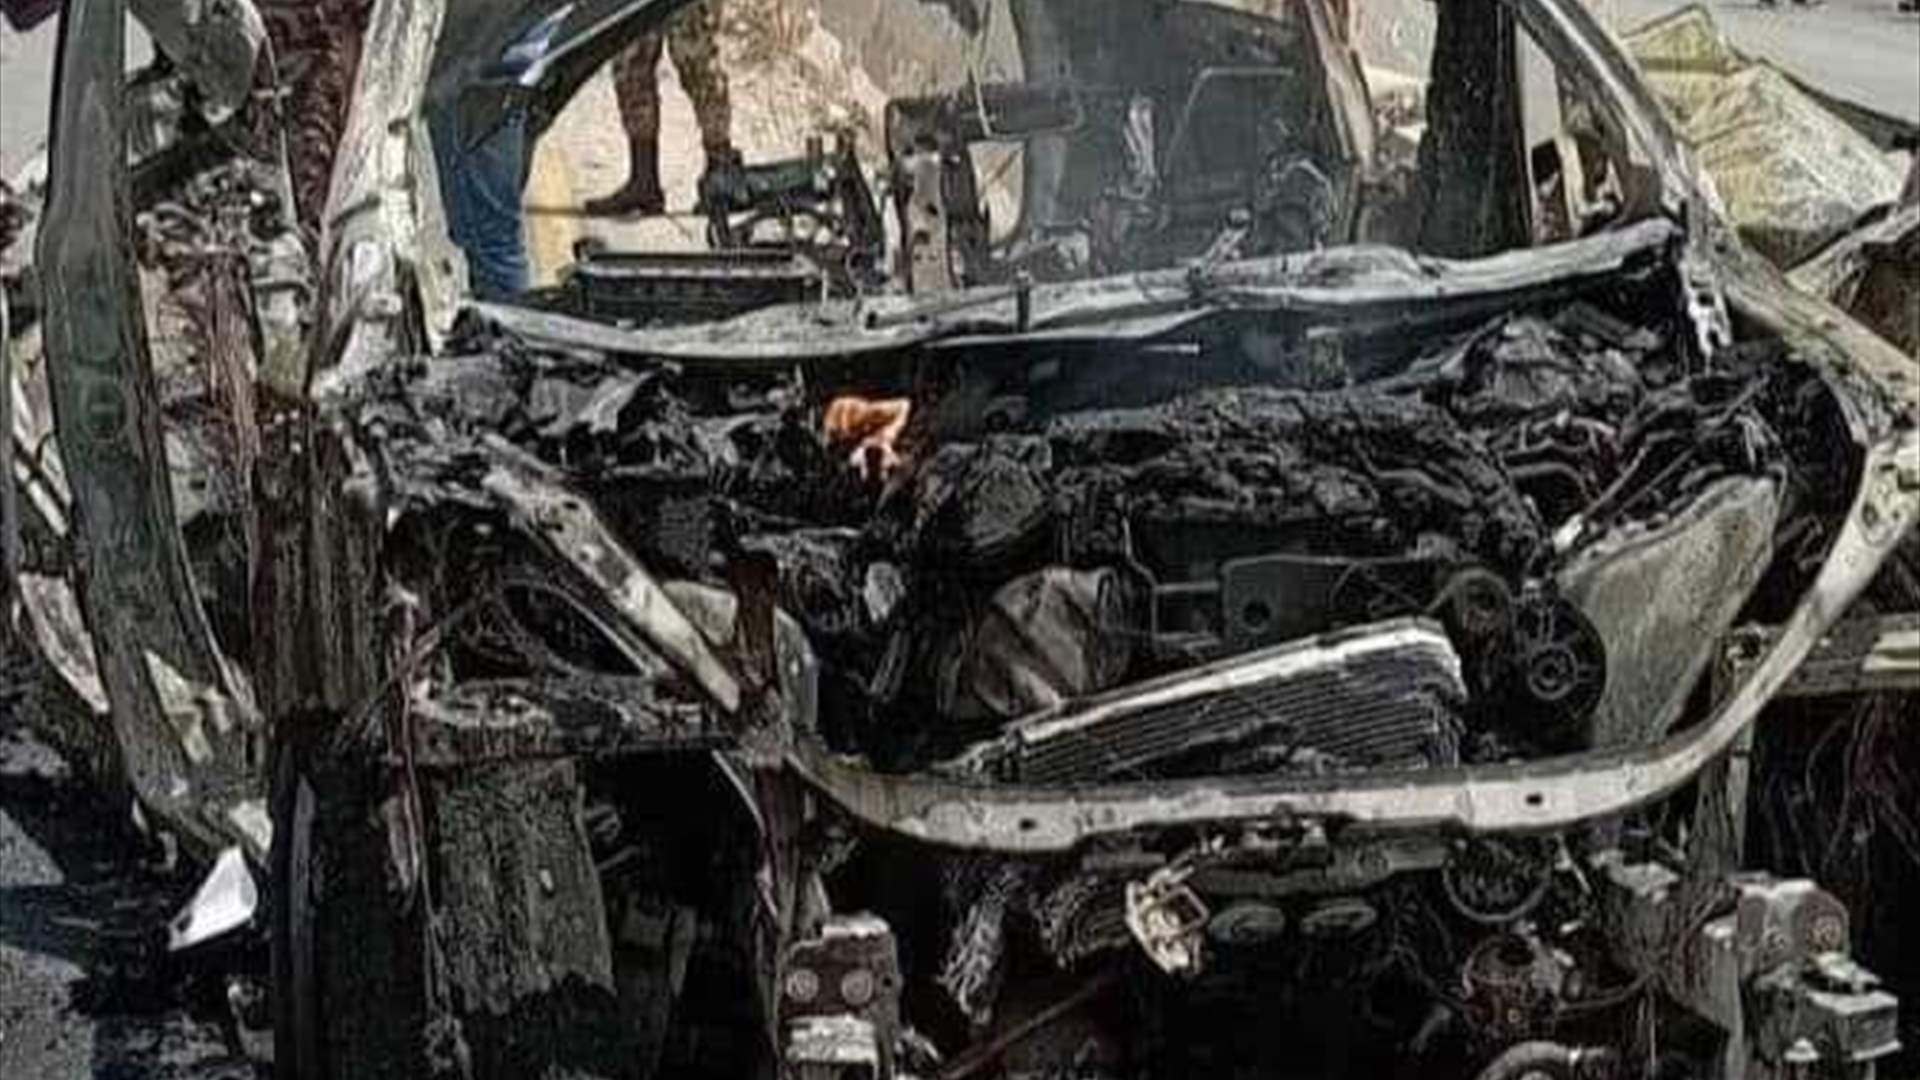 سقوط عنصرين بقصف اسرائيلي على سيارة لحزب الله في سوريا قرب الحدود مع لبنان